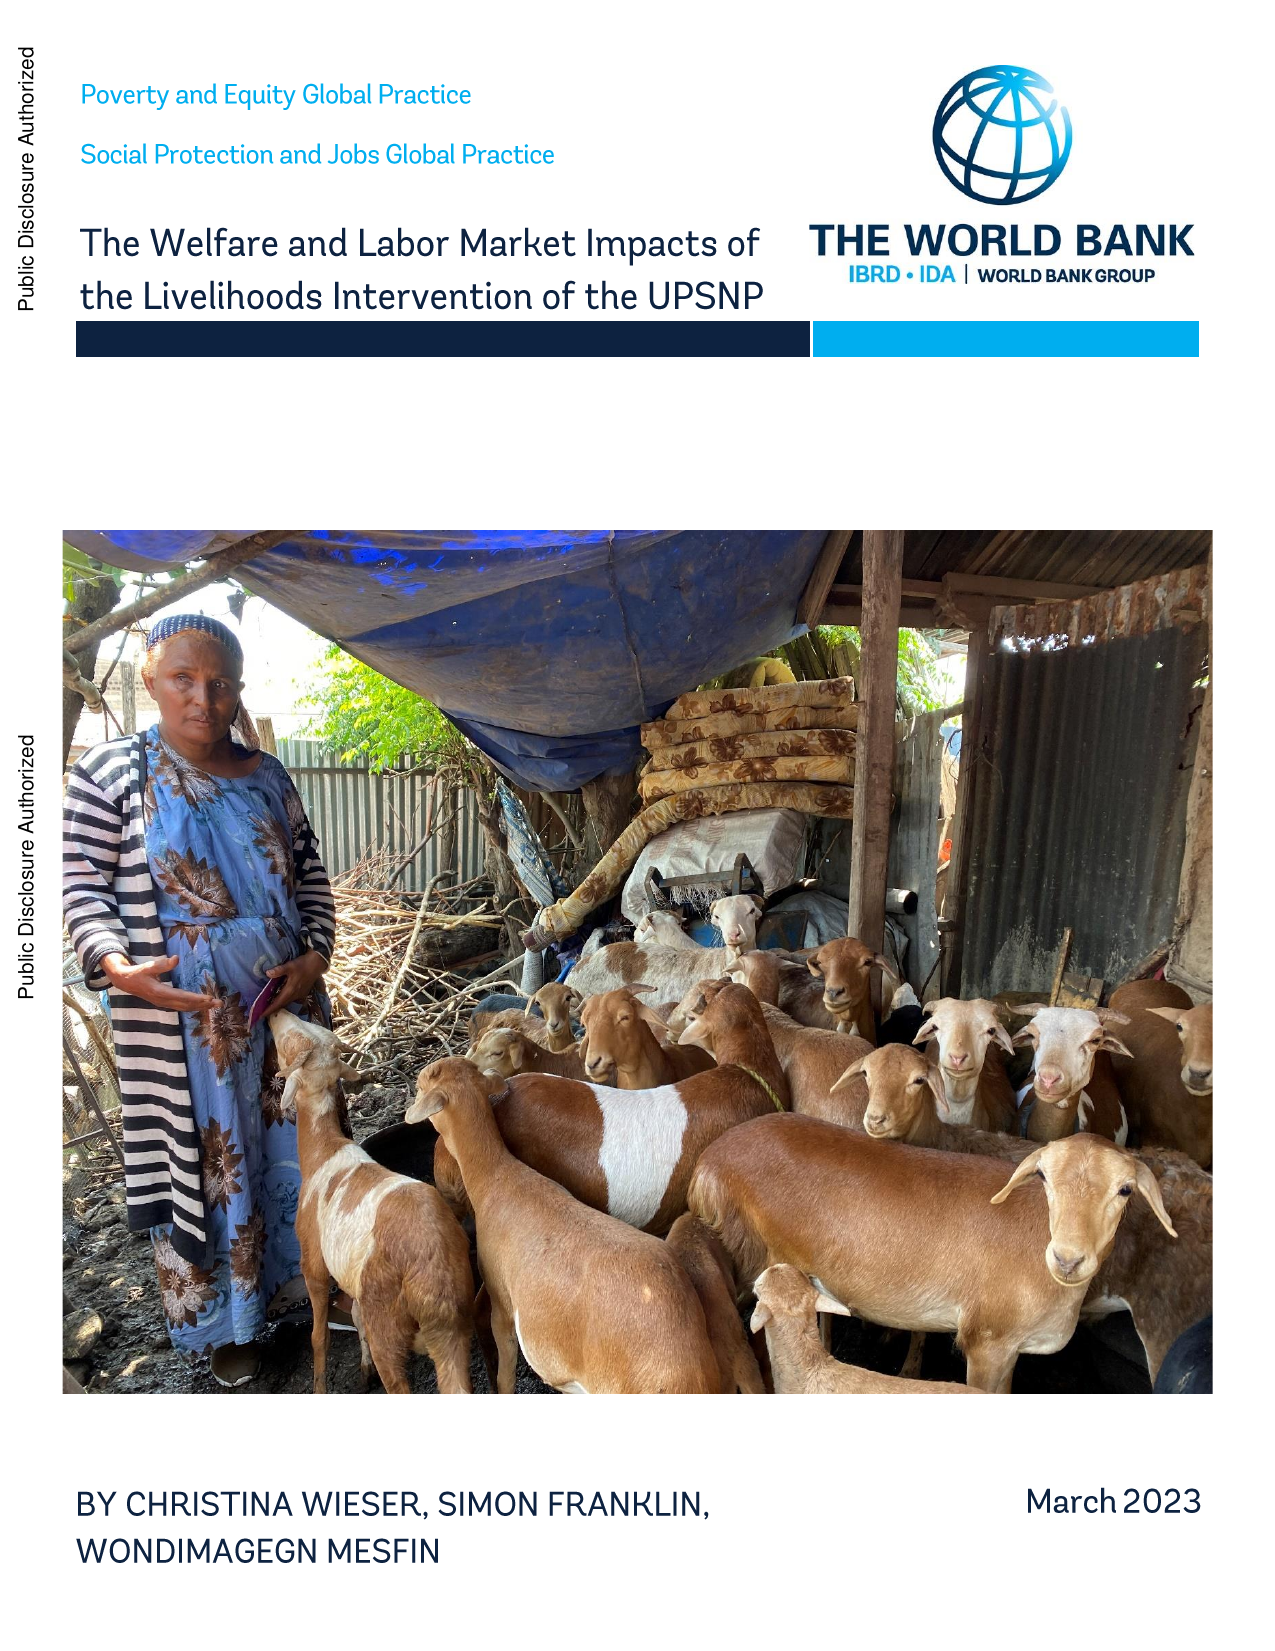 世界银行-UPSNP生计干预对福利和劳动力市场的影响（英）.pdf